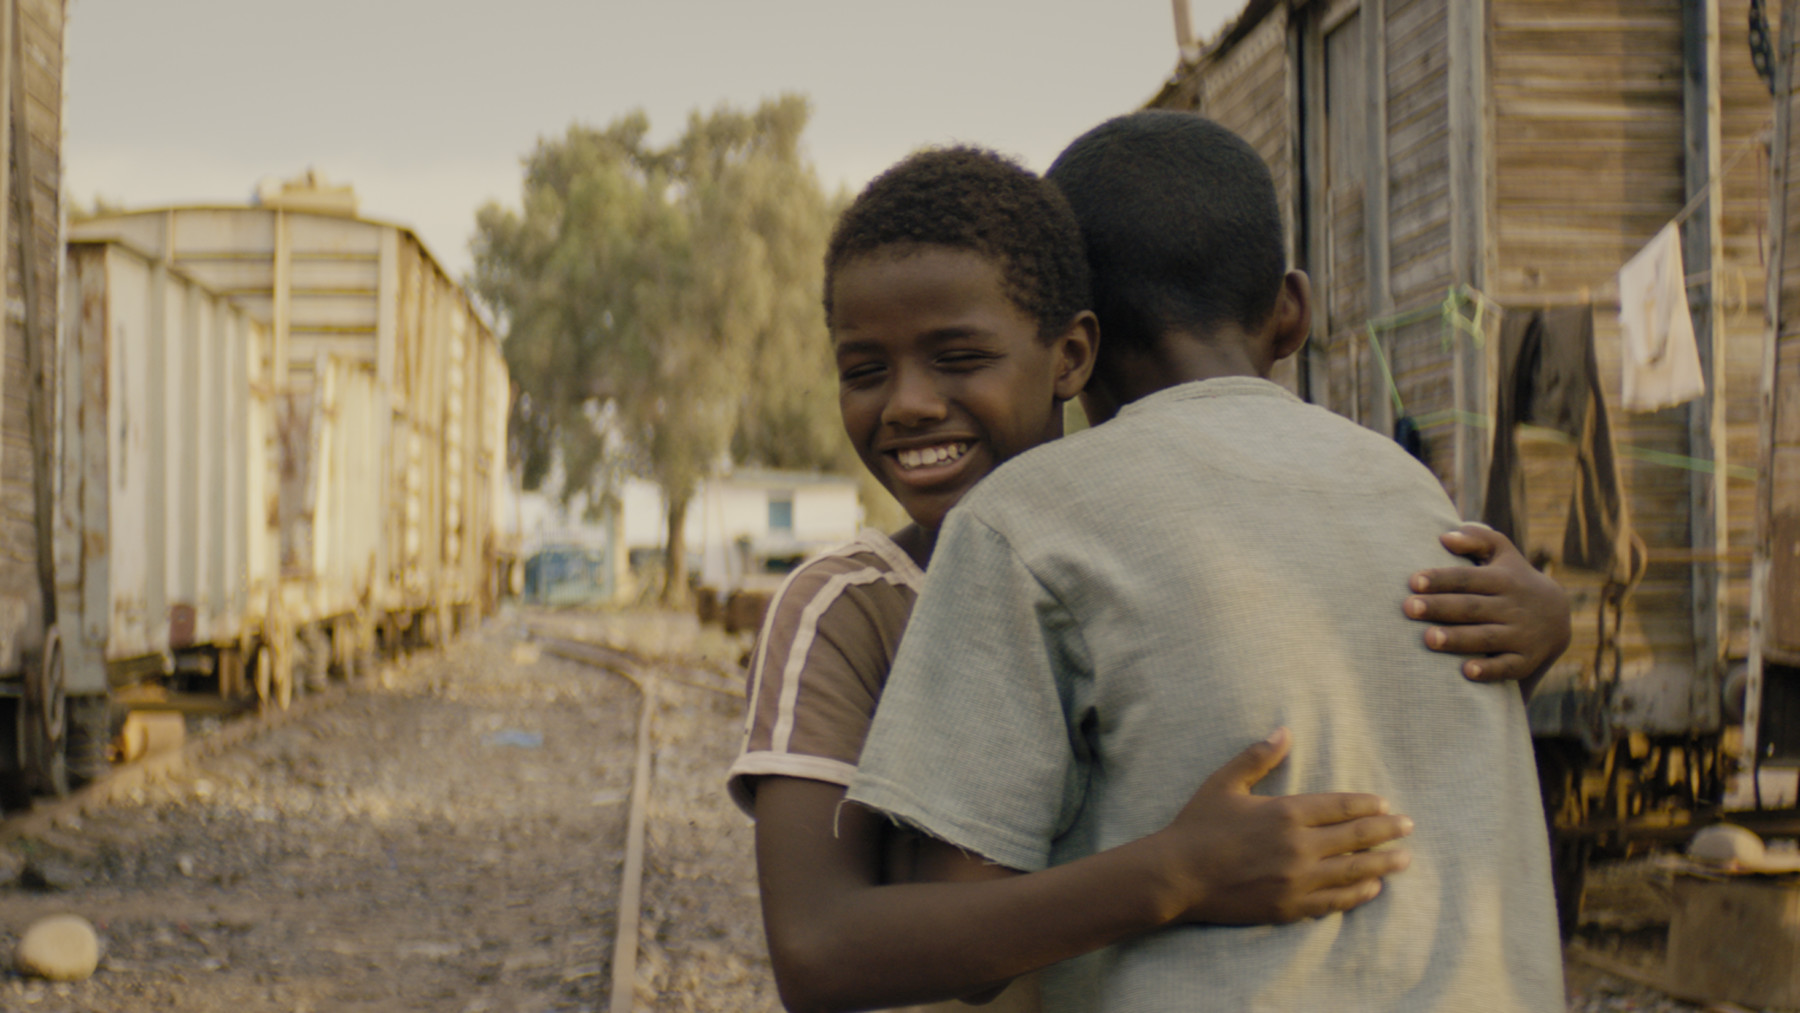 Ein Junge umarmt einen anderen Jungen auf einer Schotterstraße.